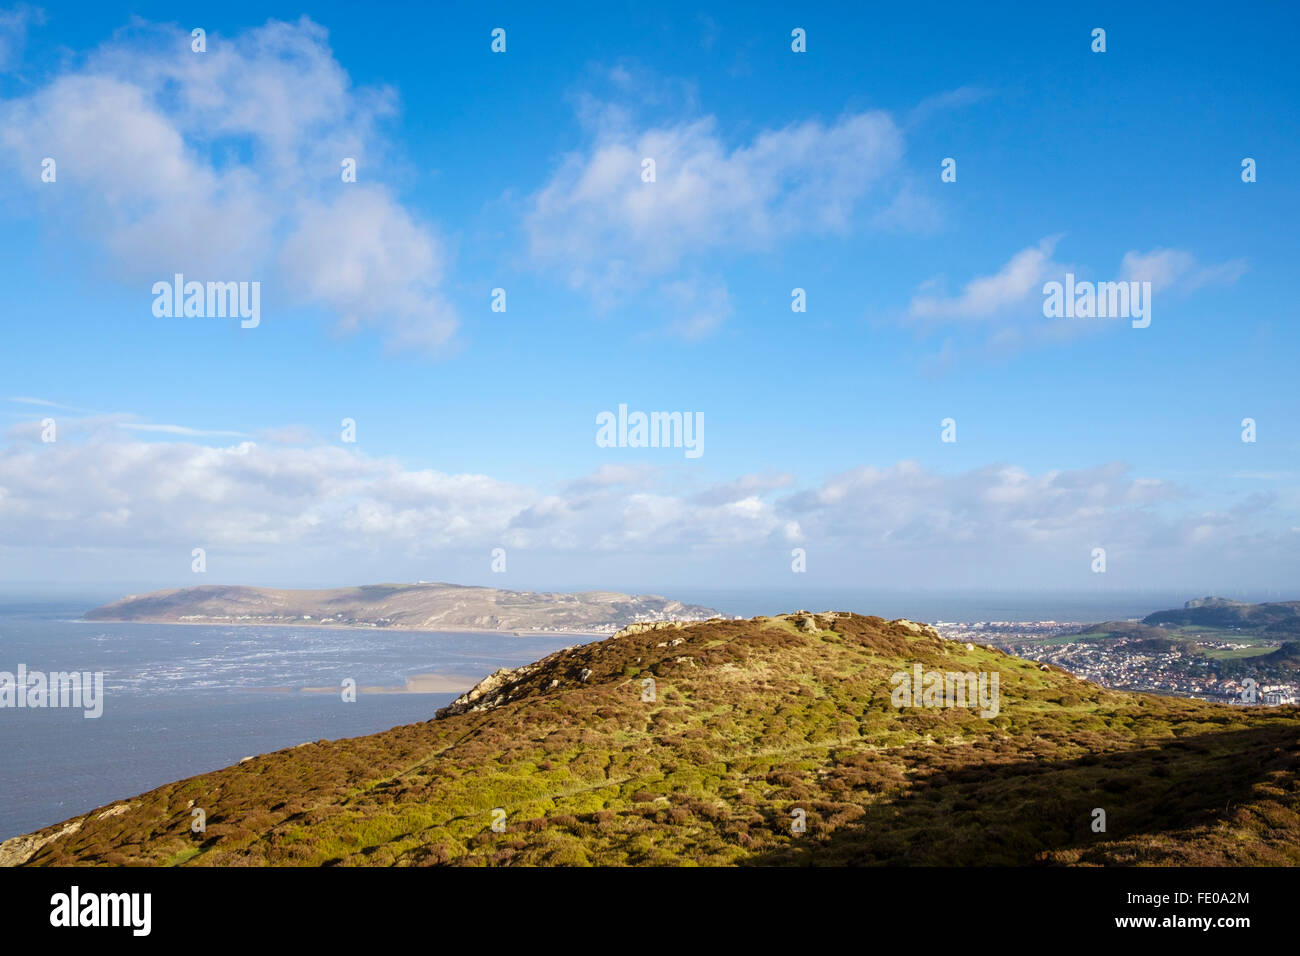 Conwy Berg am Rand des nördlichen Snowdonia mit Blick auf den Great Orme an der Küste. Conwy, North Wales, UK, Großbritannien Stockfoto